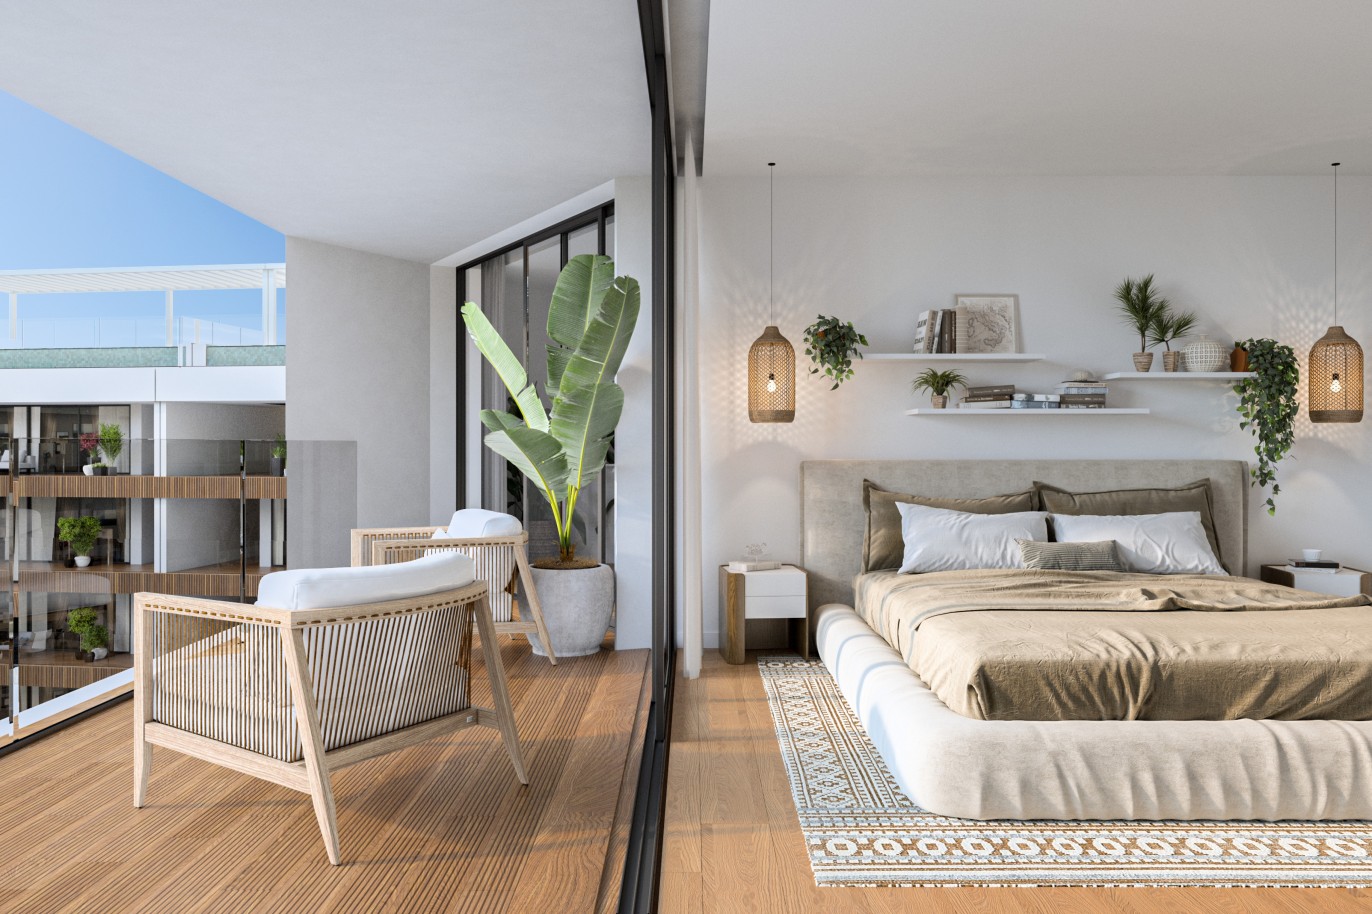 Appartements neufs avec vue sur mer, 1, 2 & 3 chambres, à vendre à Olhão, Algarve_244033